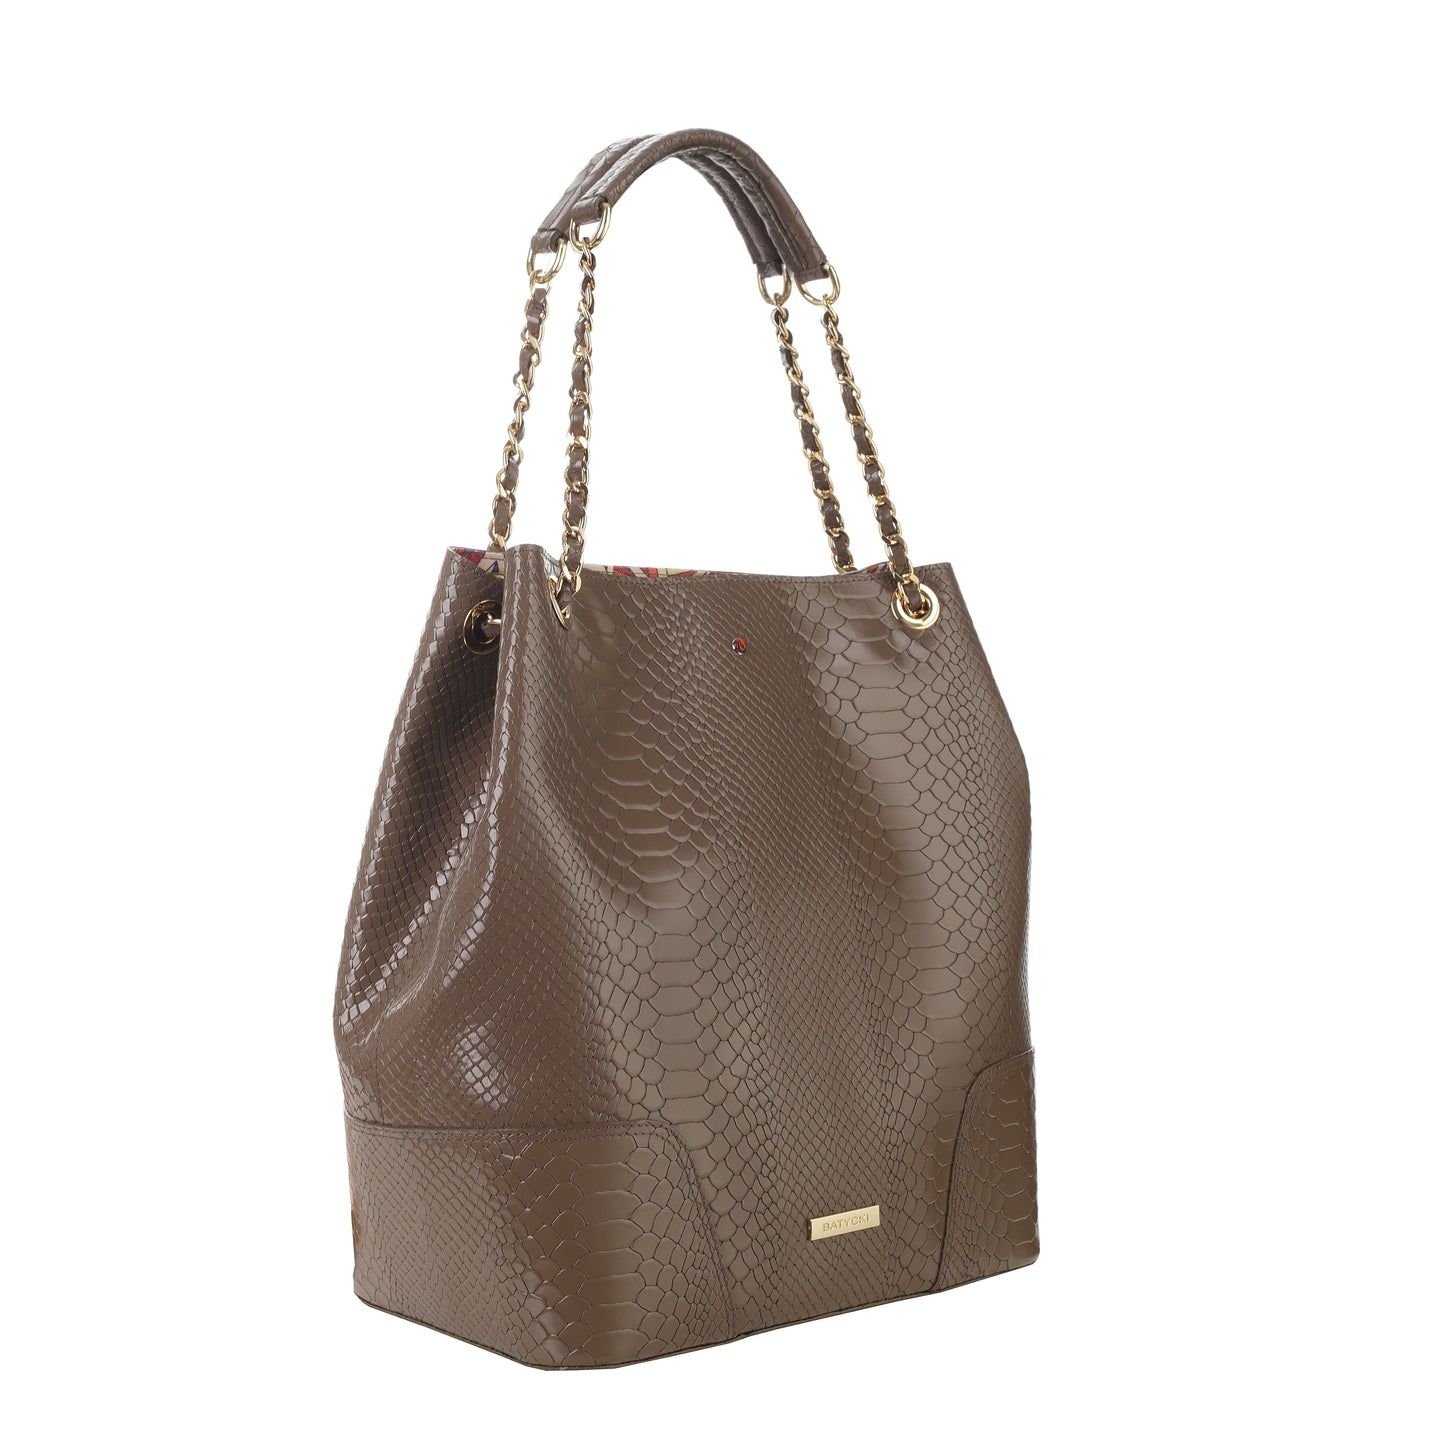 AMELIA MOCCA women's leather handbag